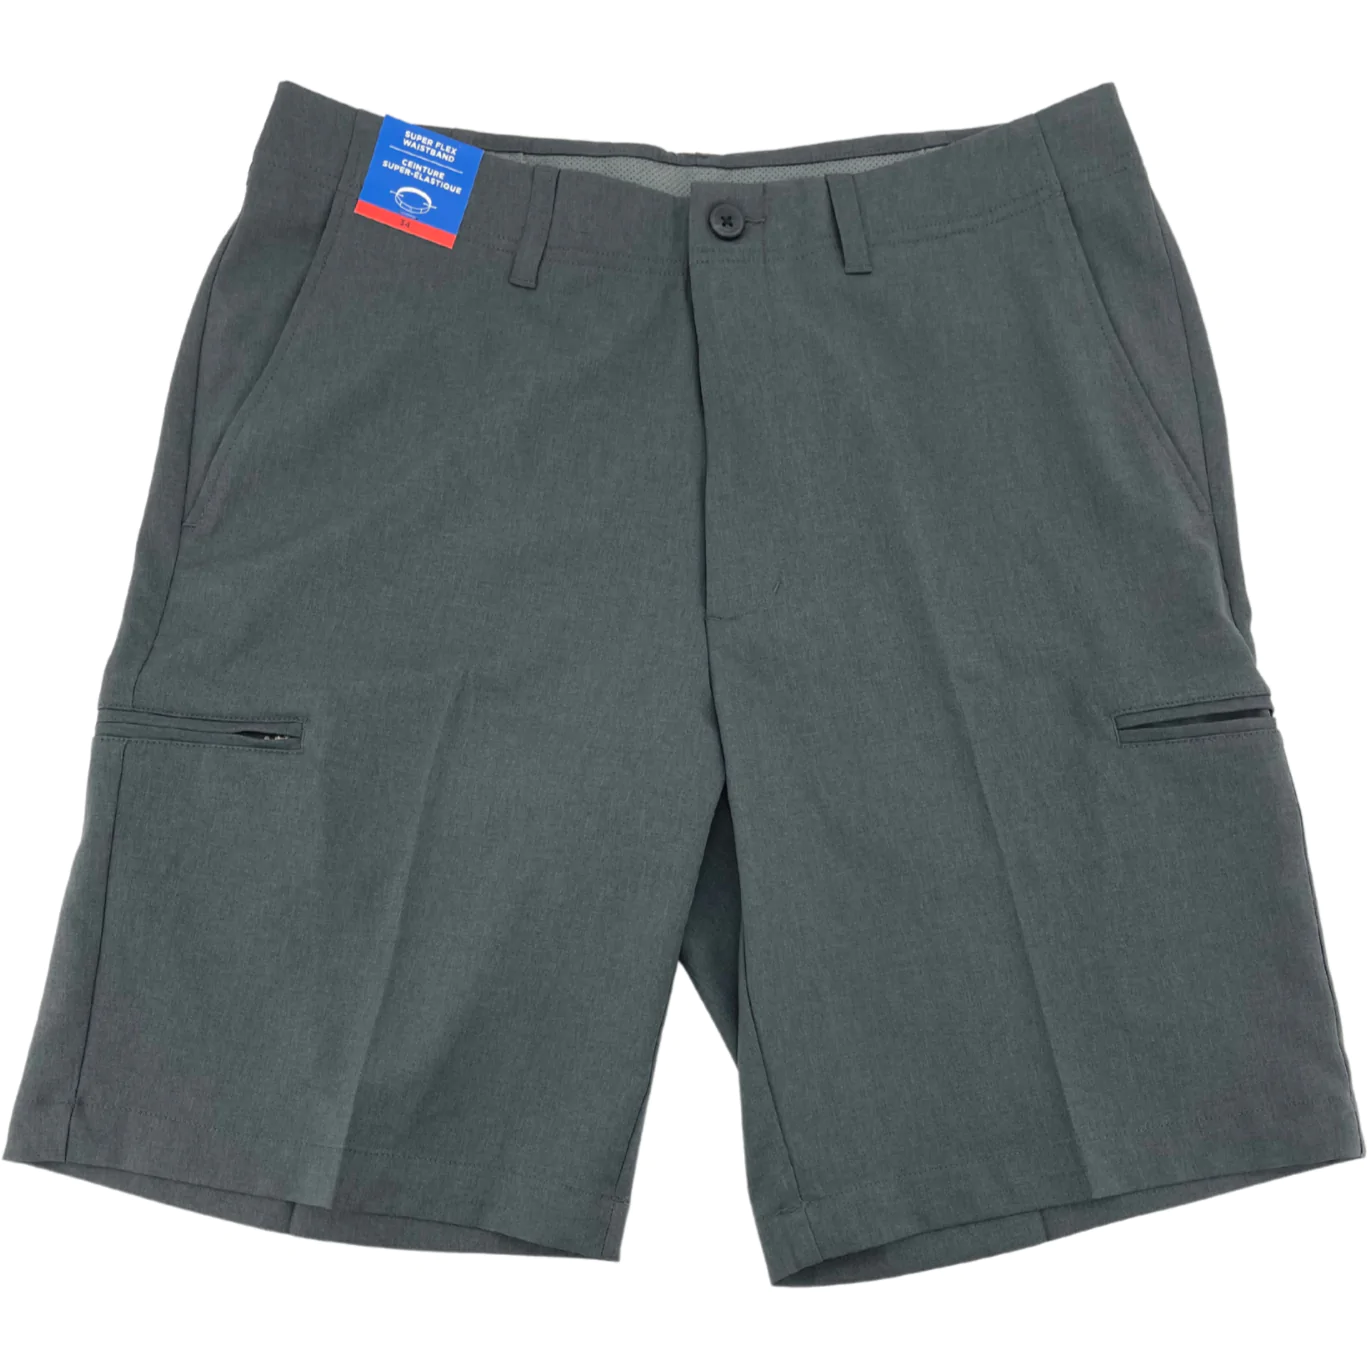 Haggar Men's Shorts / Utility Short / Grey / Size 34